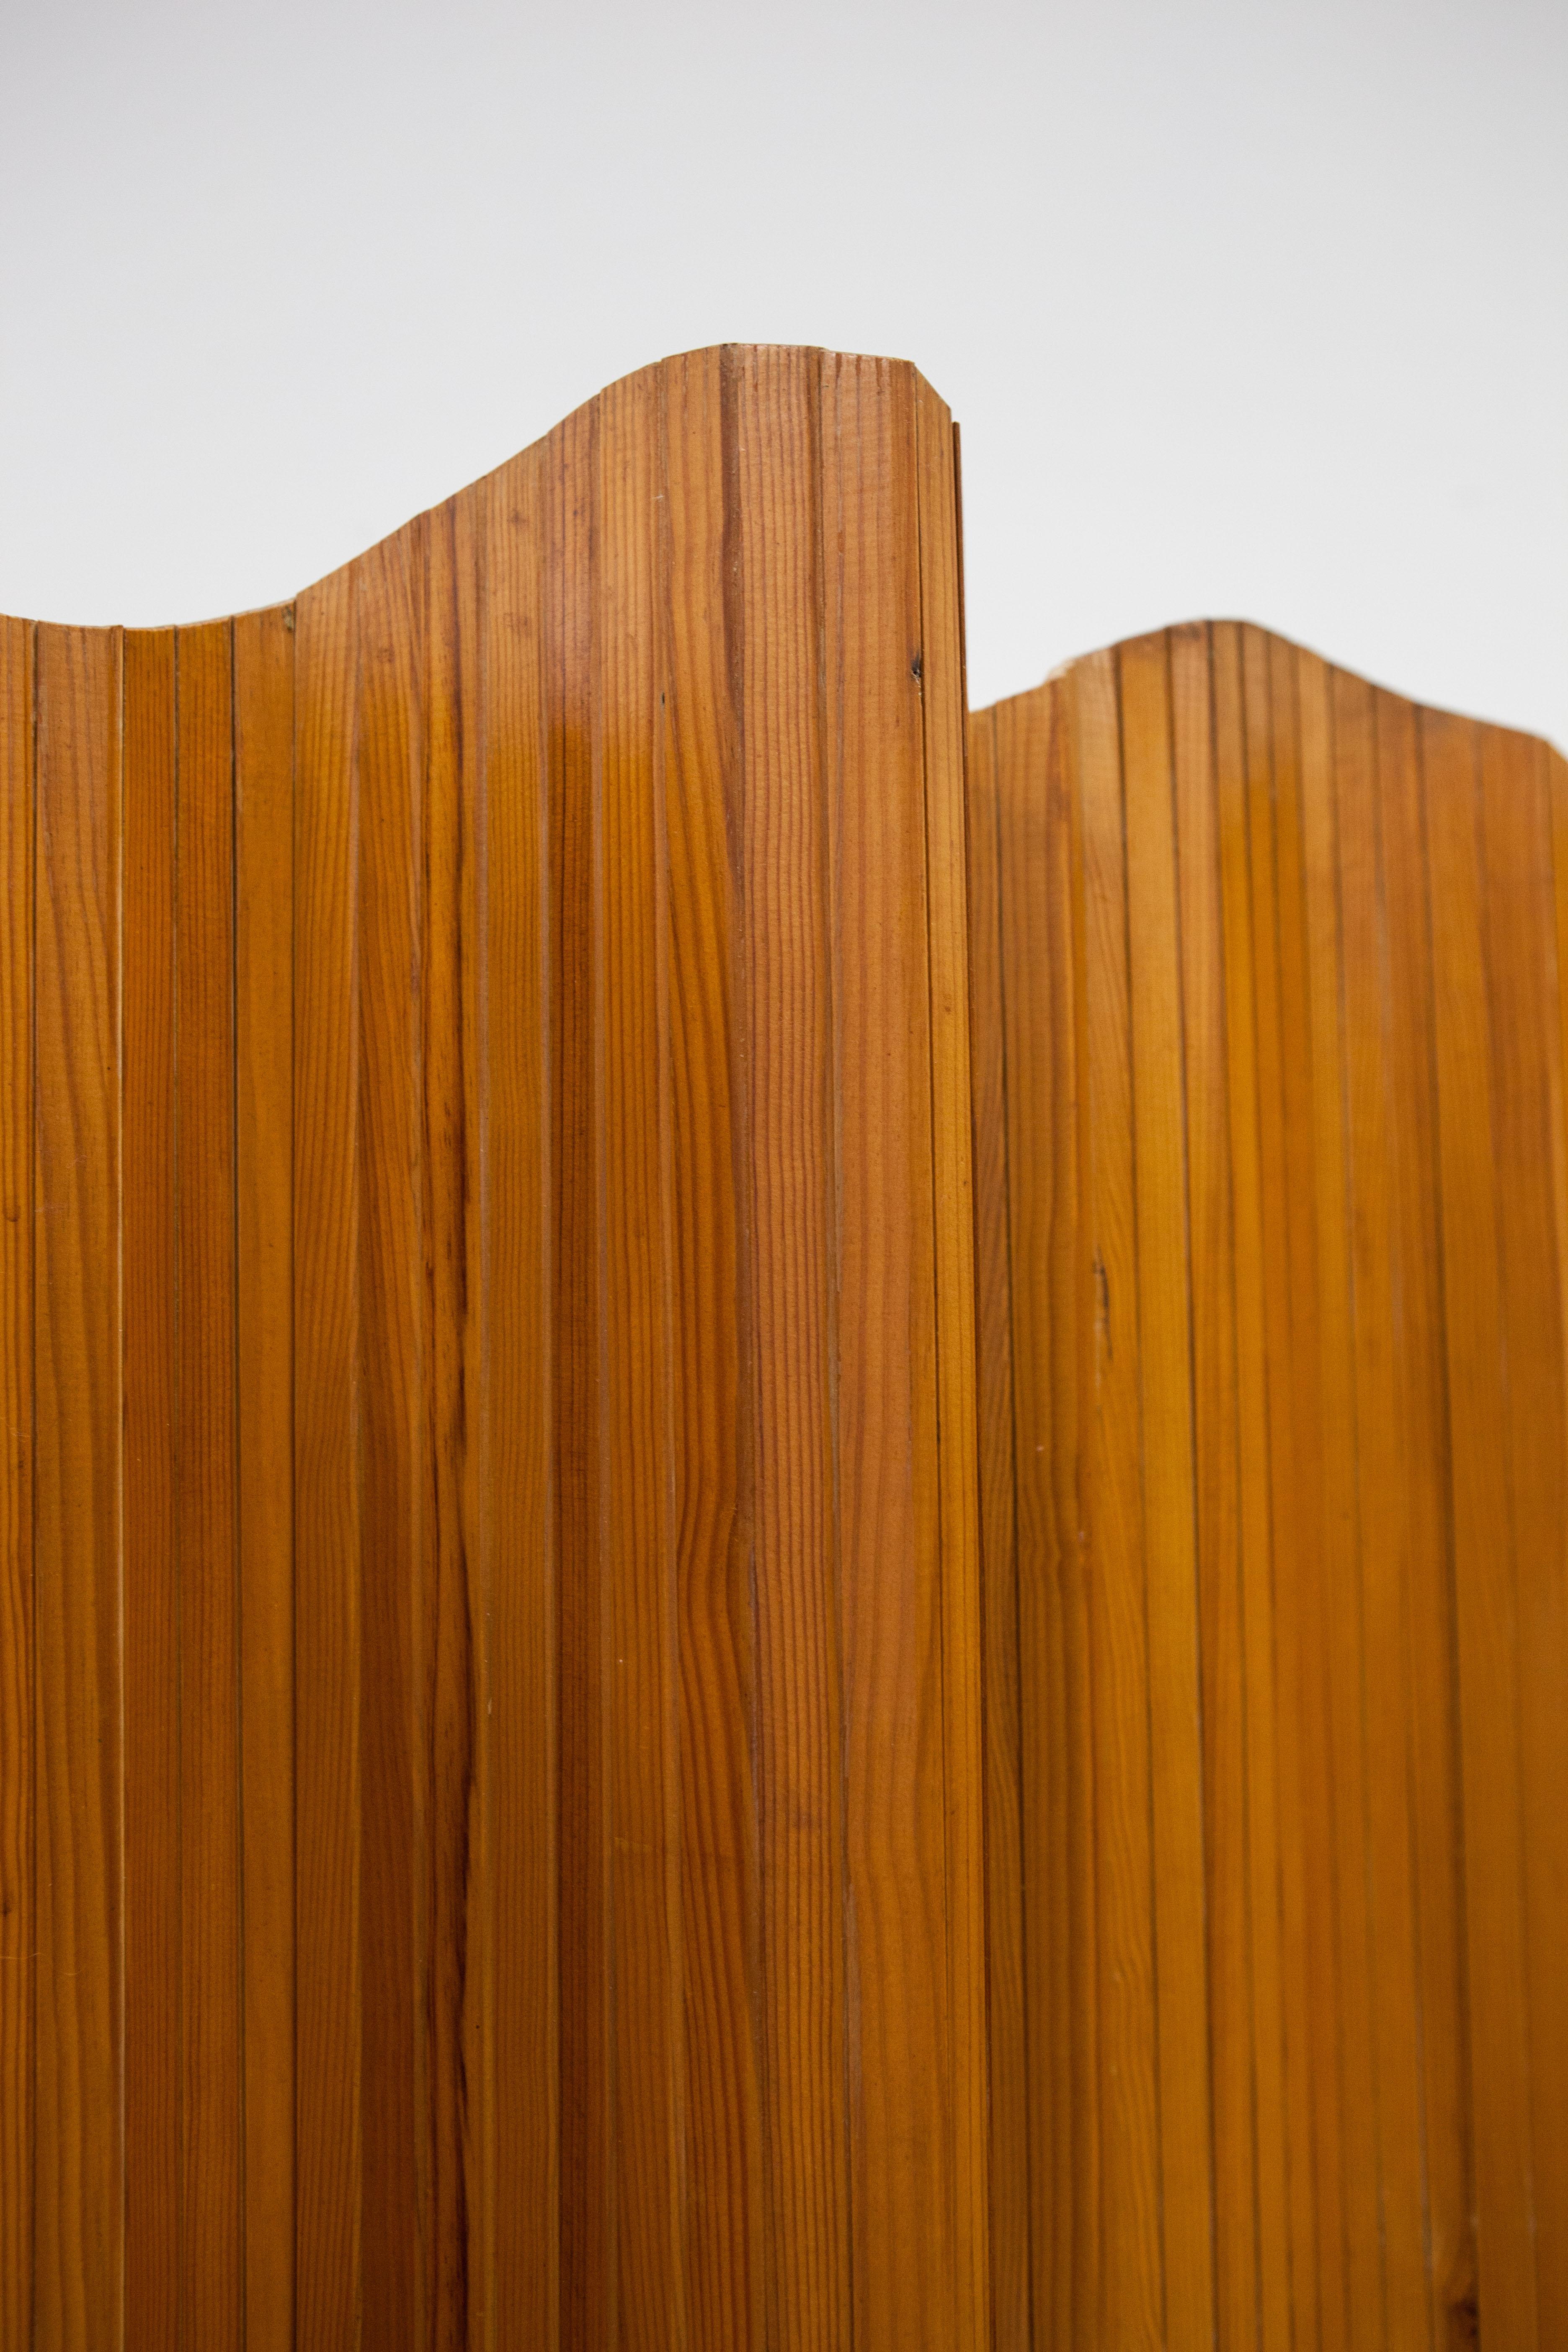 
Dans les années 1930, Jomain Baumann a conçu une cloison de séparation composée de lattes de bois de pin attachées par un fil métallique. Il l'a appelé l'écran Tambour. Les différentes lattes de bois permettaient de plier l'écran dans la forme